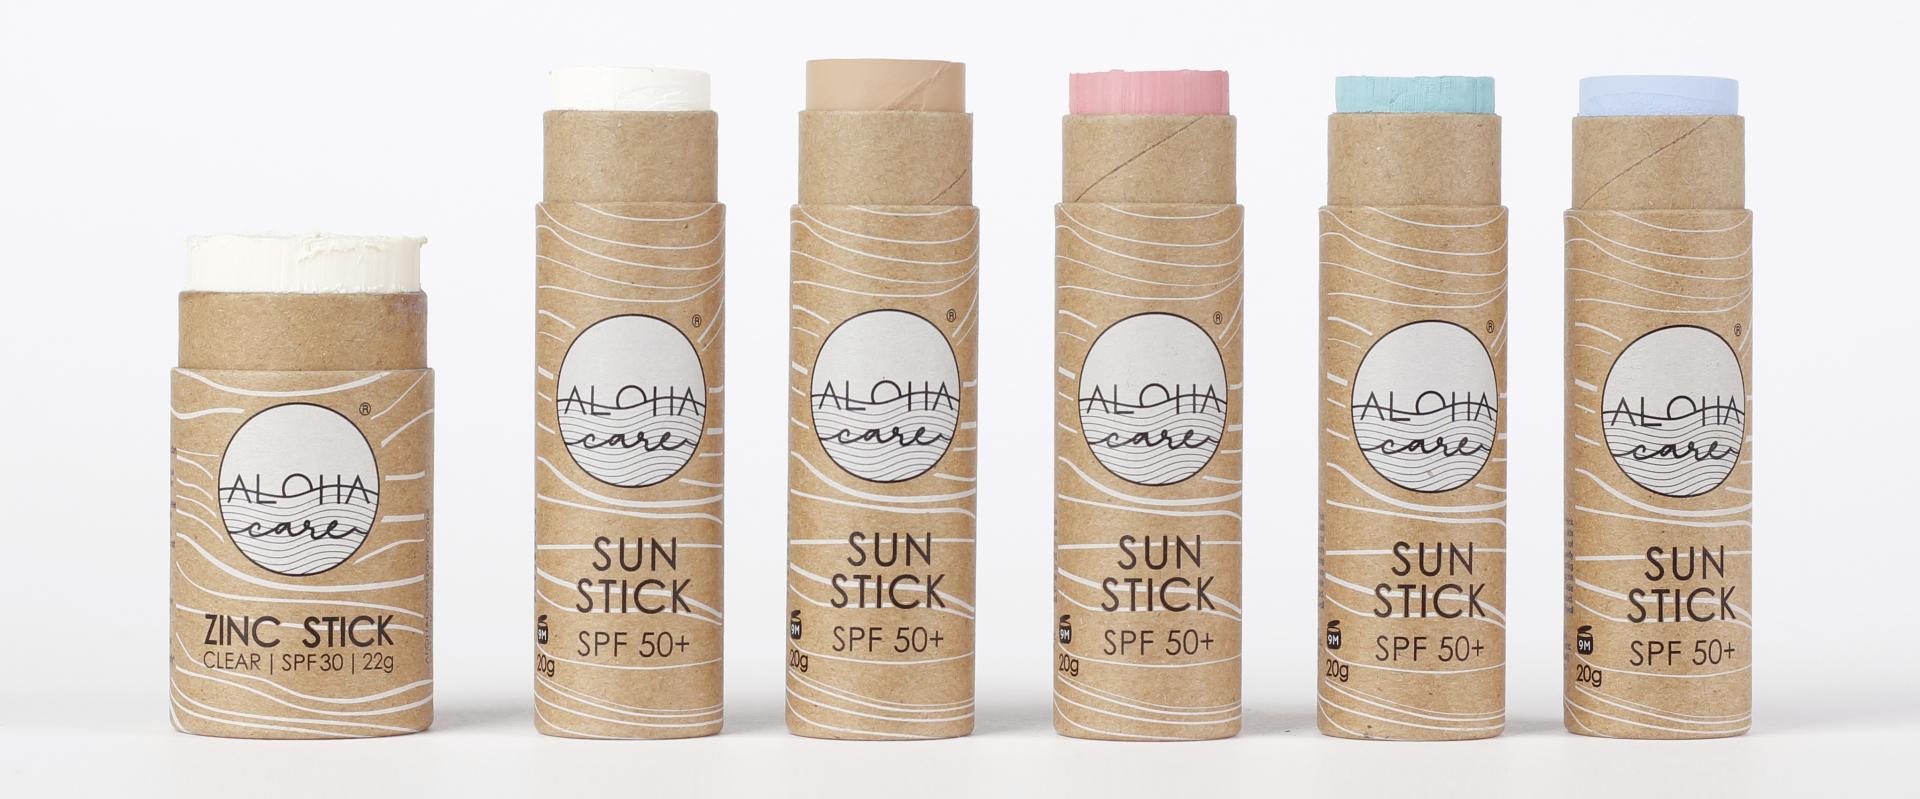 Aloha Sun Stick – kolorowe sztyfty przeciwsłoneczne z filtrami mineralnymi, w opakowaniach bez plastiku w czerwcu w sieci Rossmann